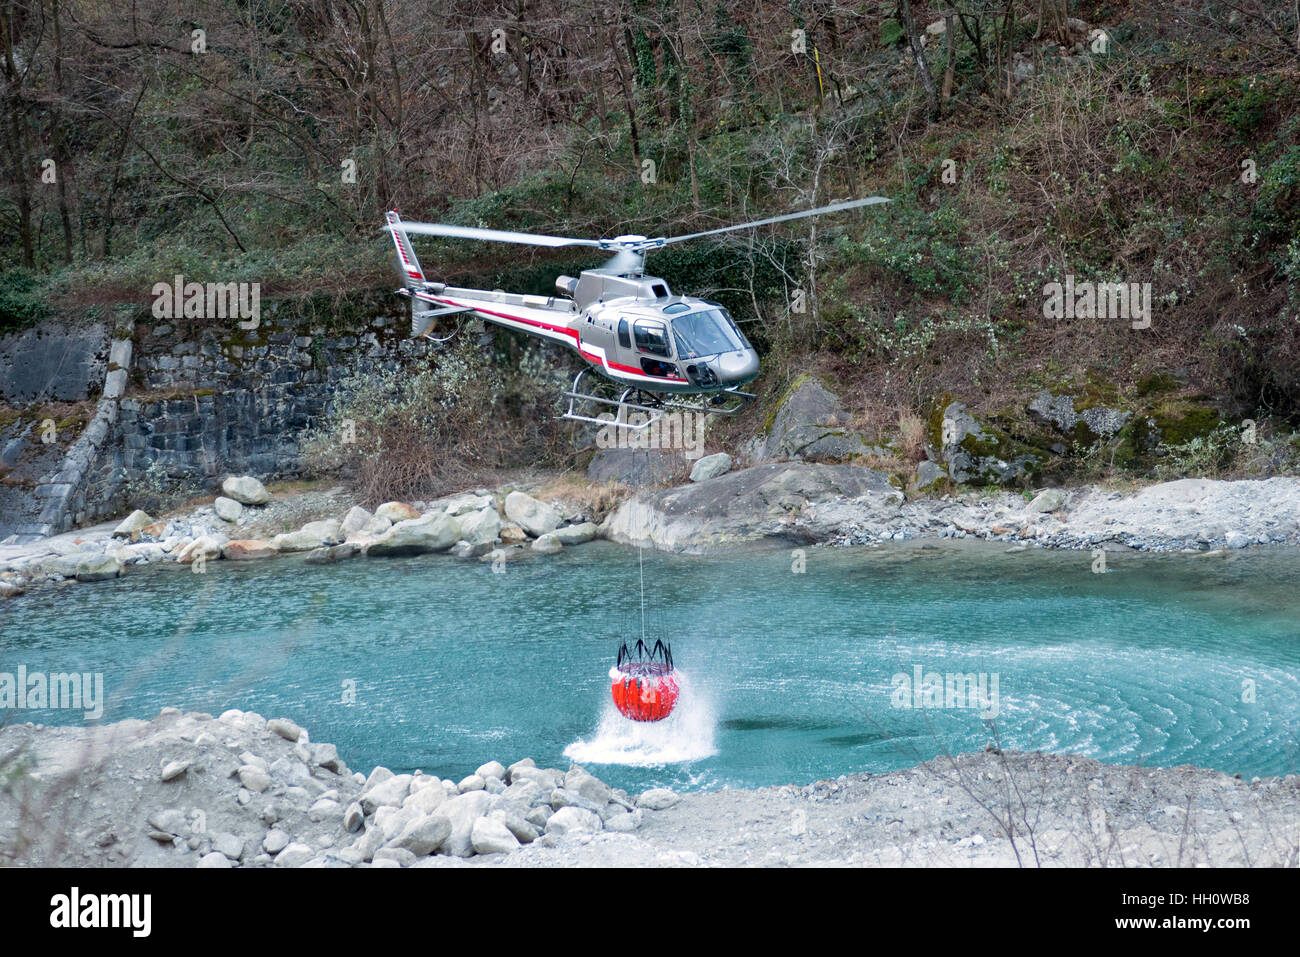 Hélicoptère de lutte contre l'incendie à la collecte de l'eau dans un seau suspendu au-dessous le broyeur d'une rivière de montagne à dowse les flammes Banque D'Images